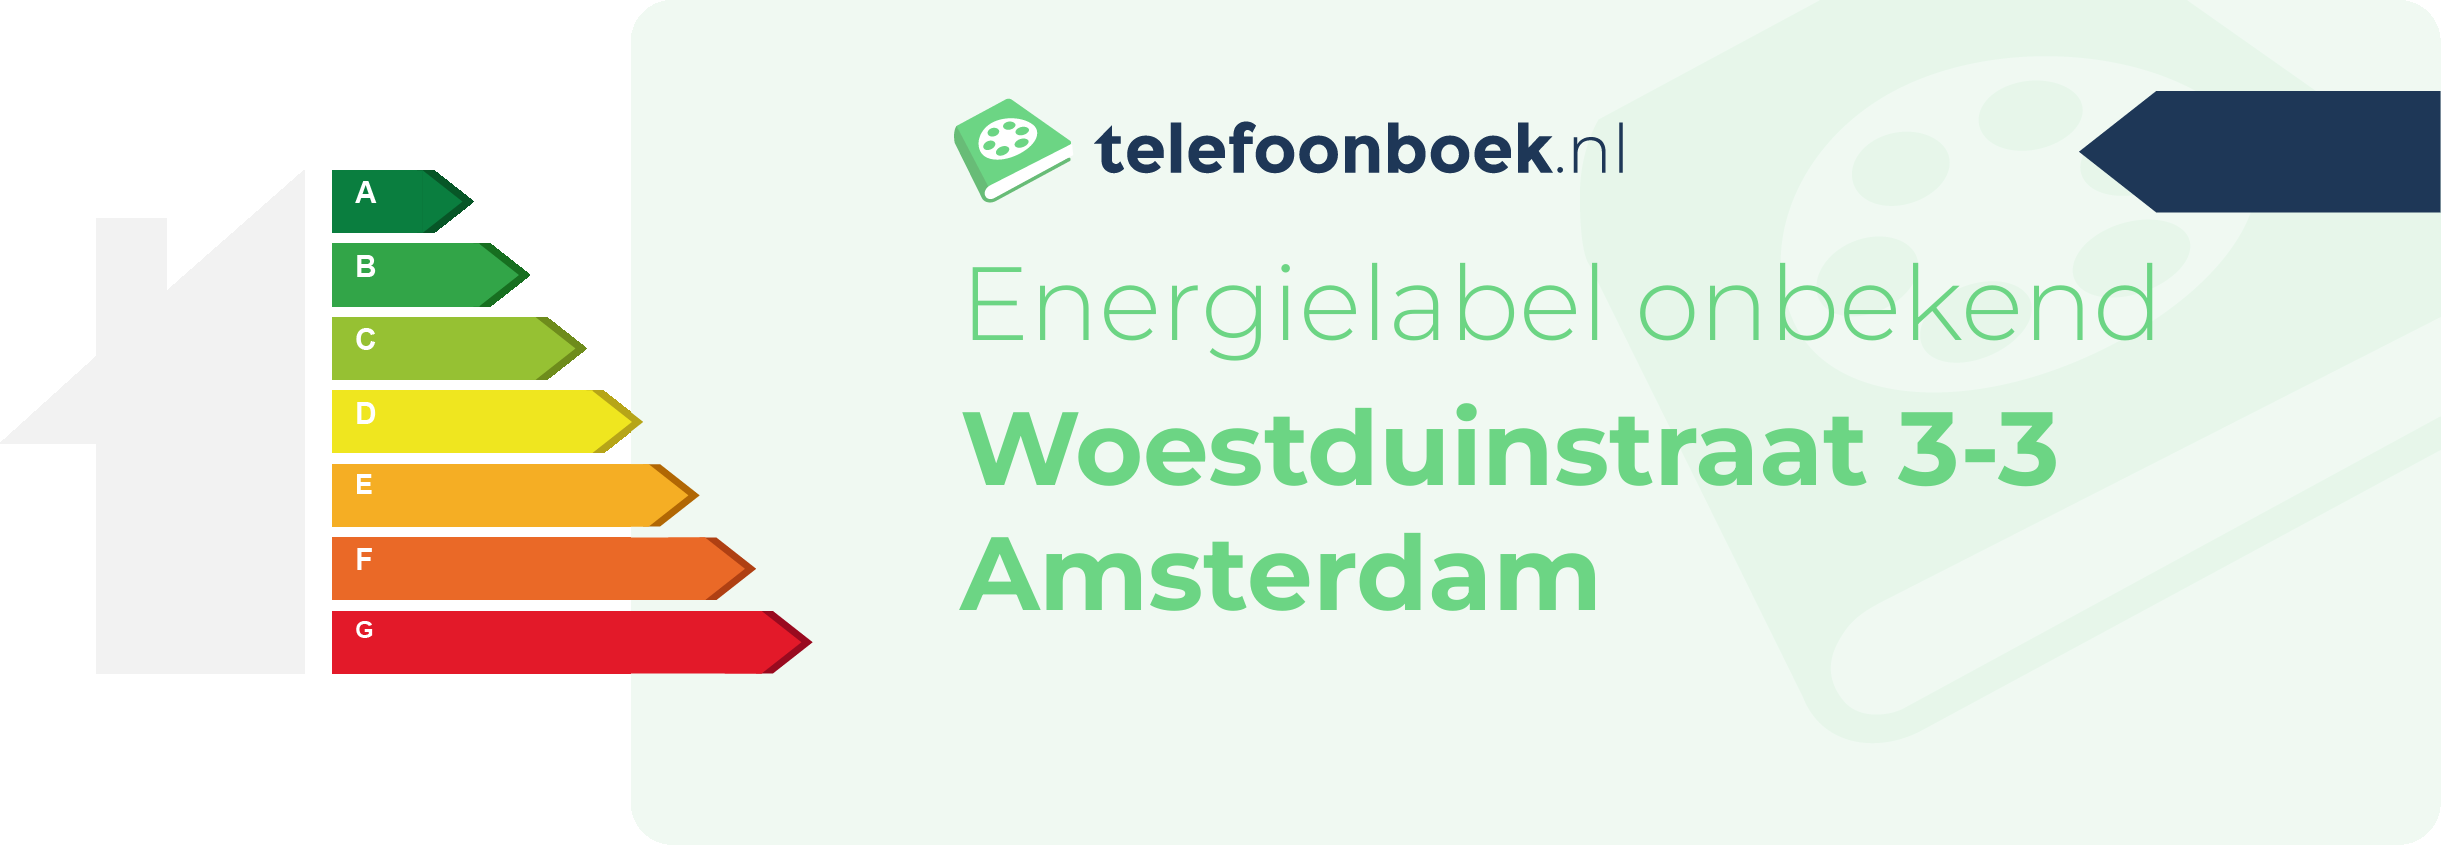 Energielabel Woestduinstraat 3-3 Amsterdam